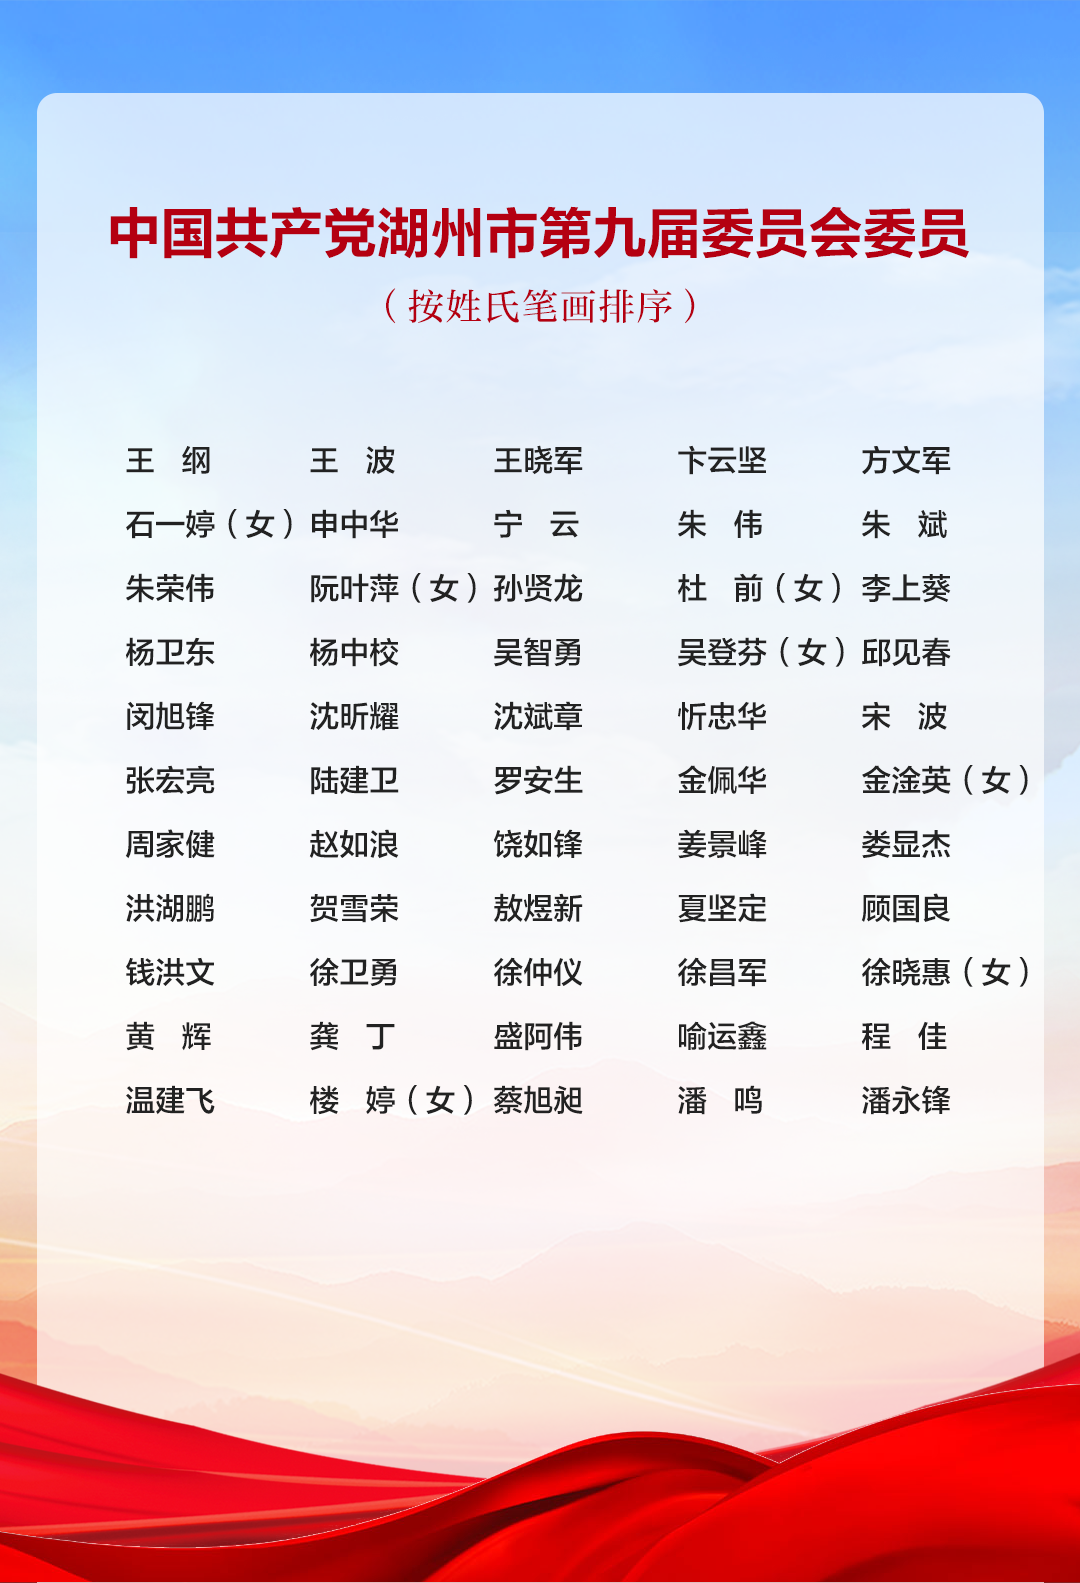 中国共产党湖州市第九届委员会书记、副书记、常务委员会委员、委员、候补委员名单